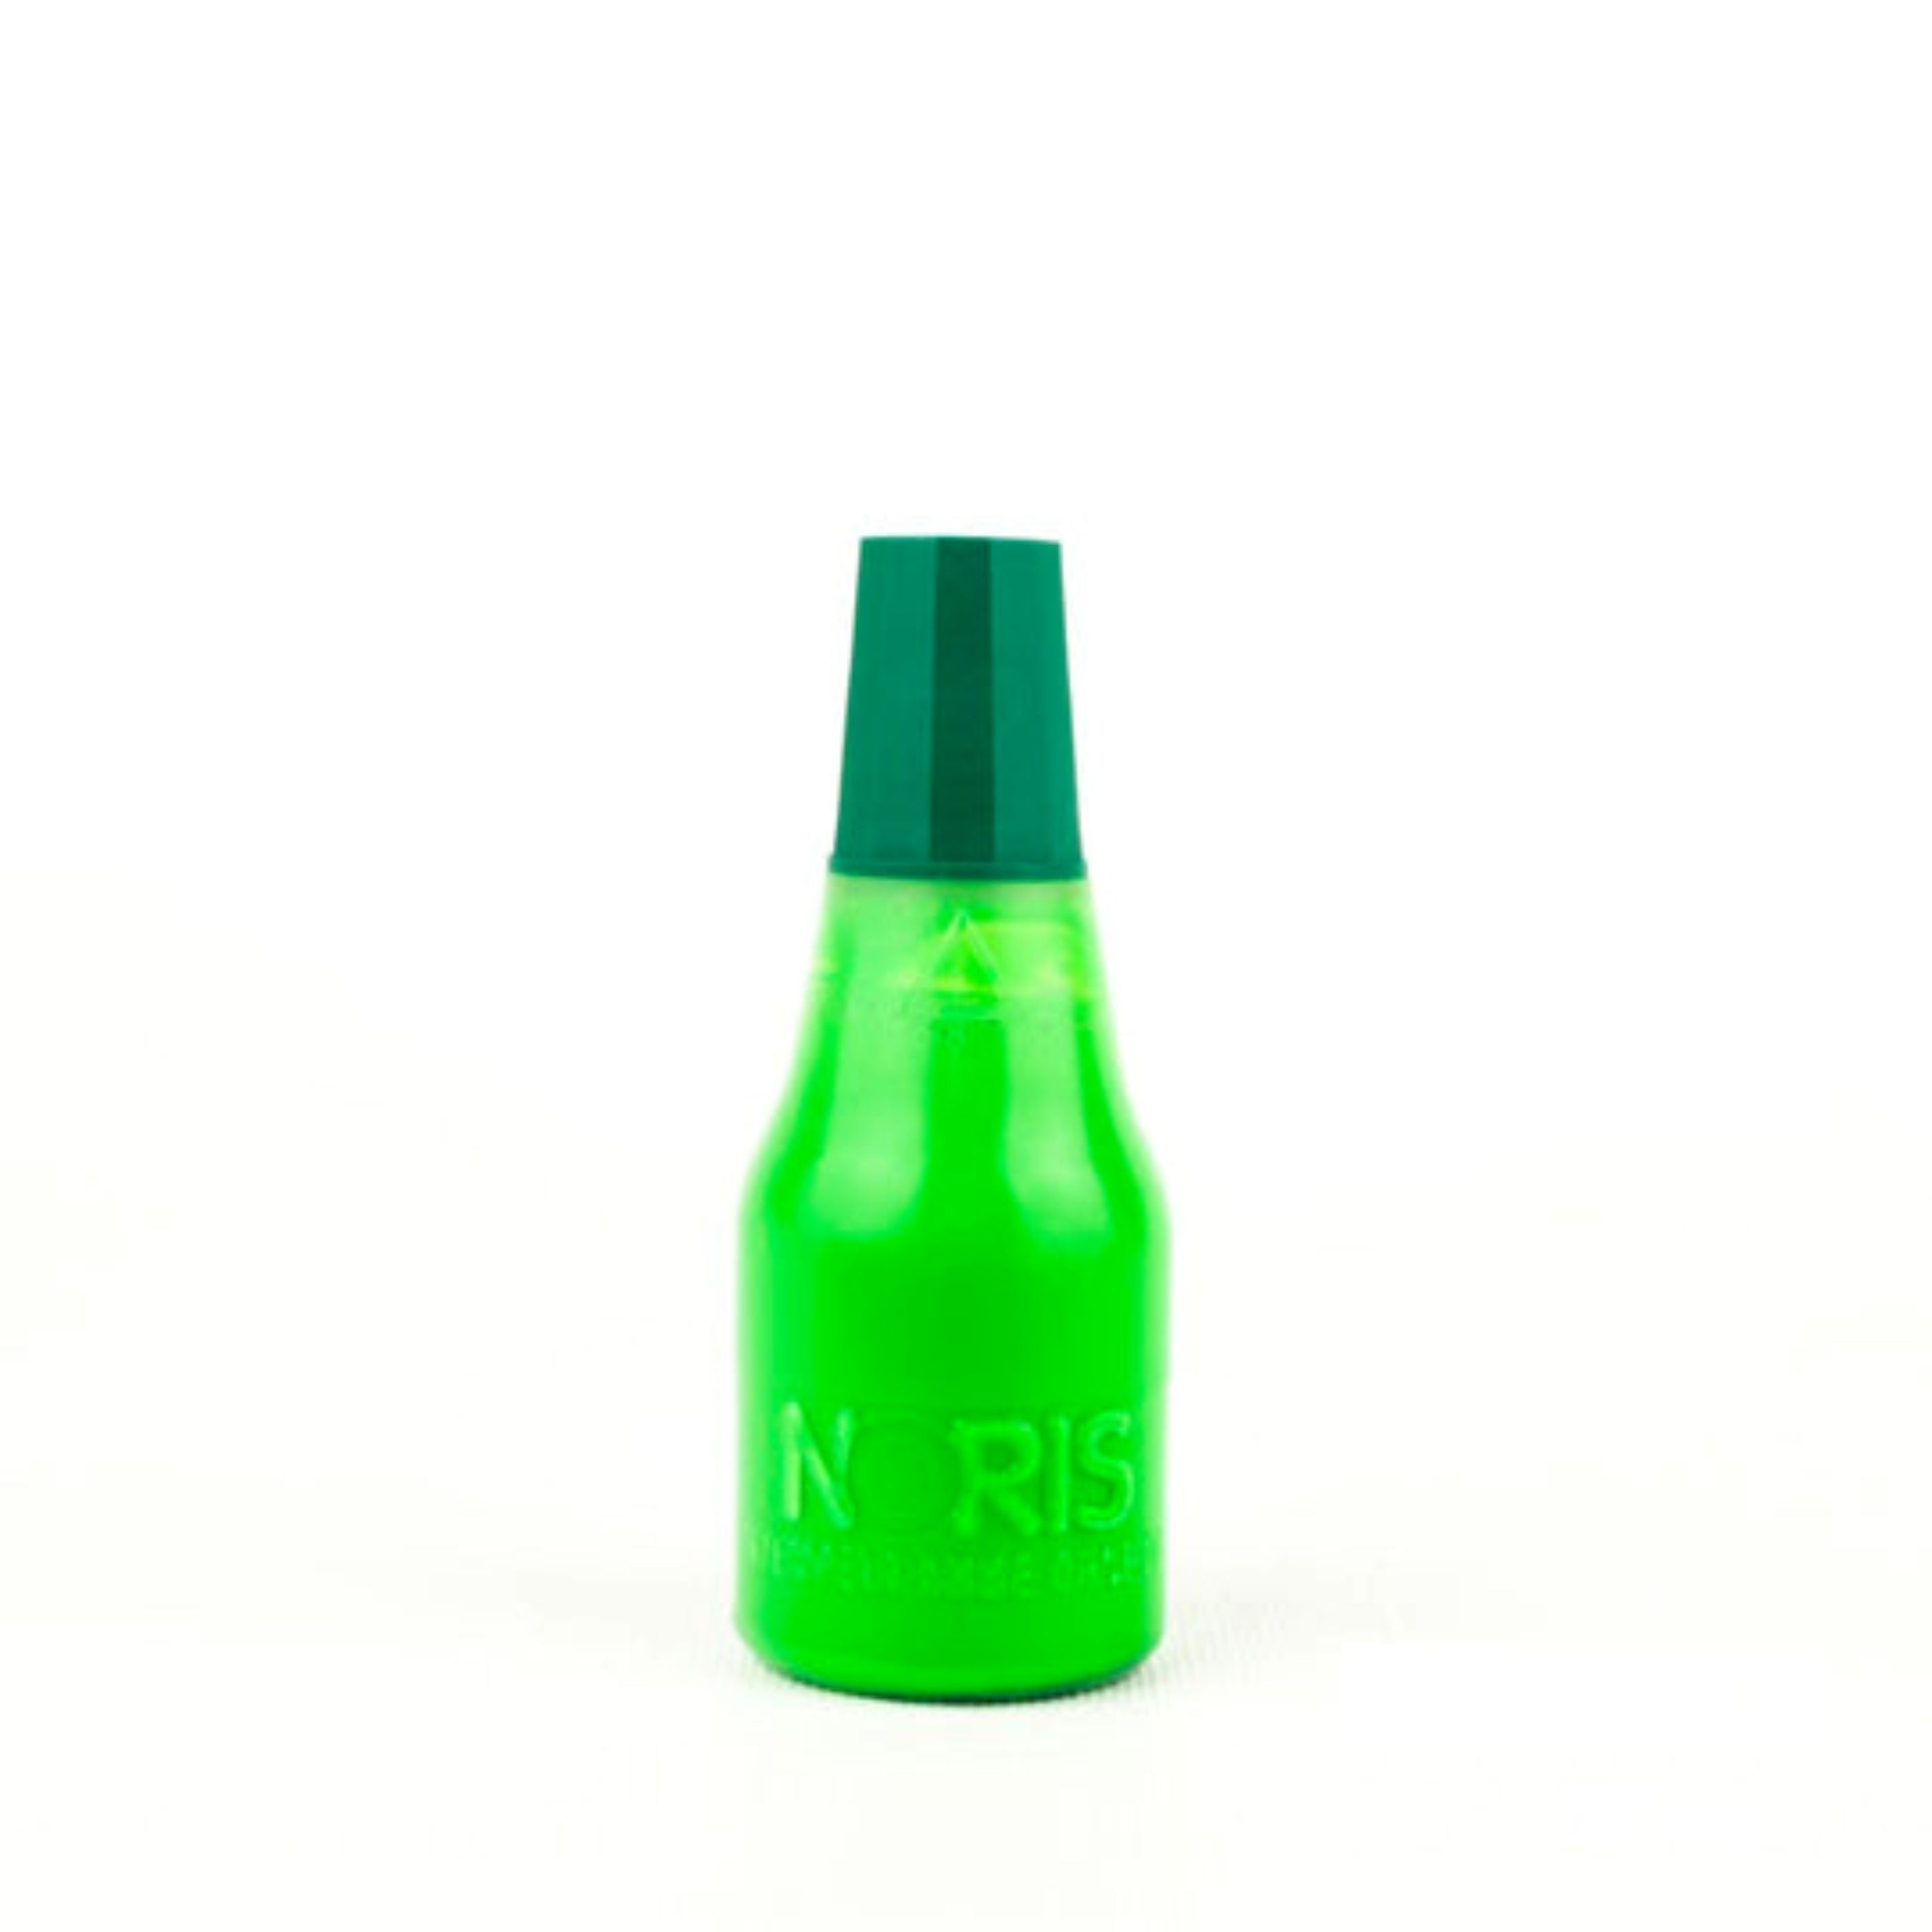 Noris zīmogu tinte neona zaļā krāsā 25ml pudelītē.